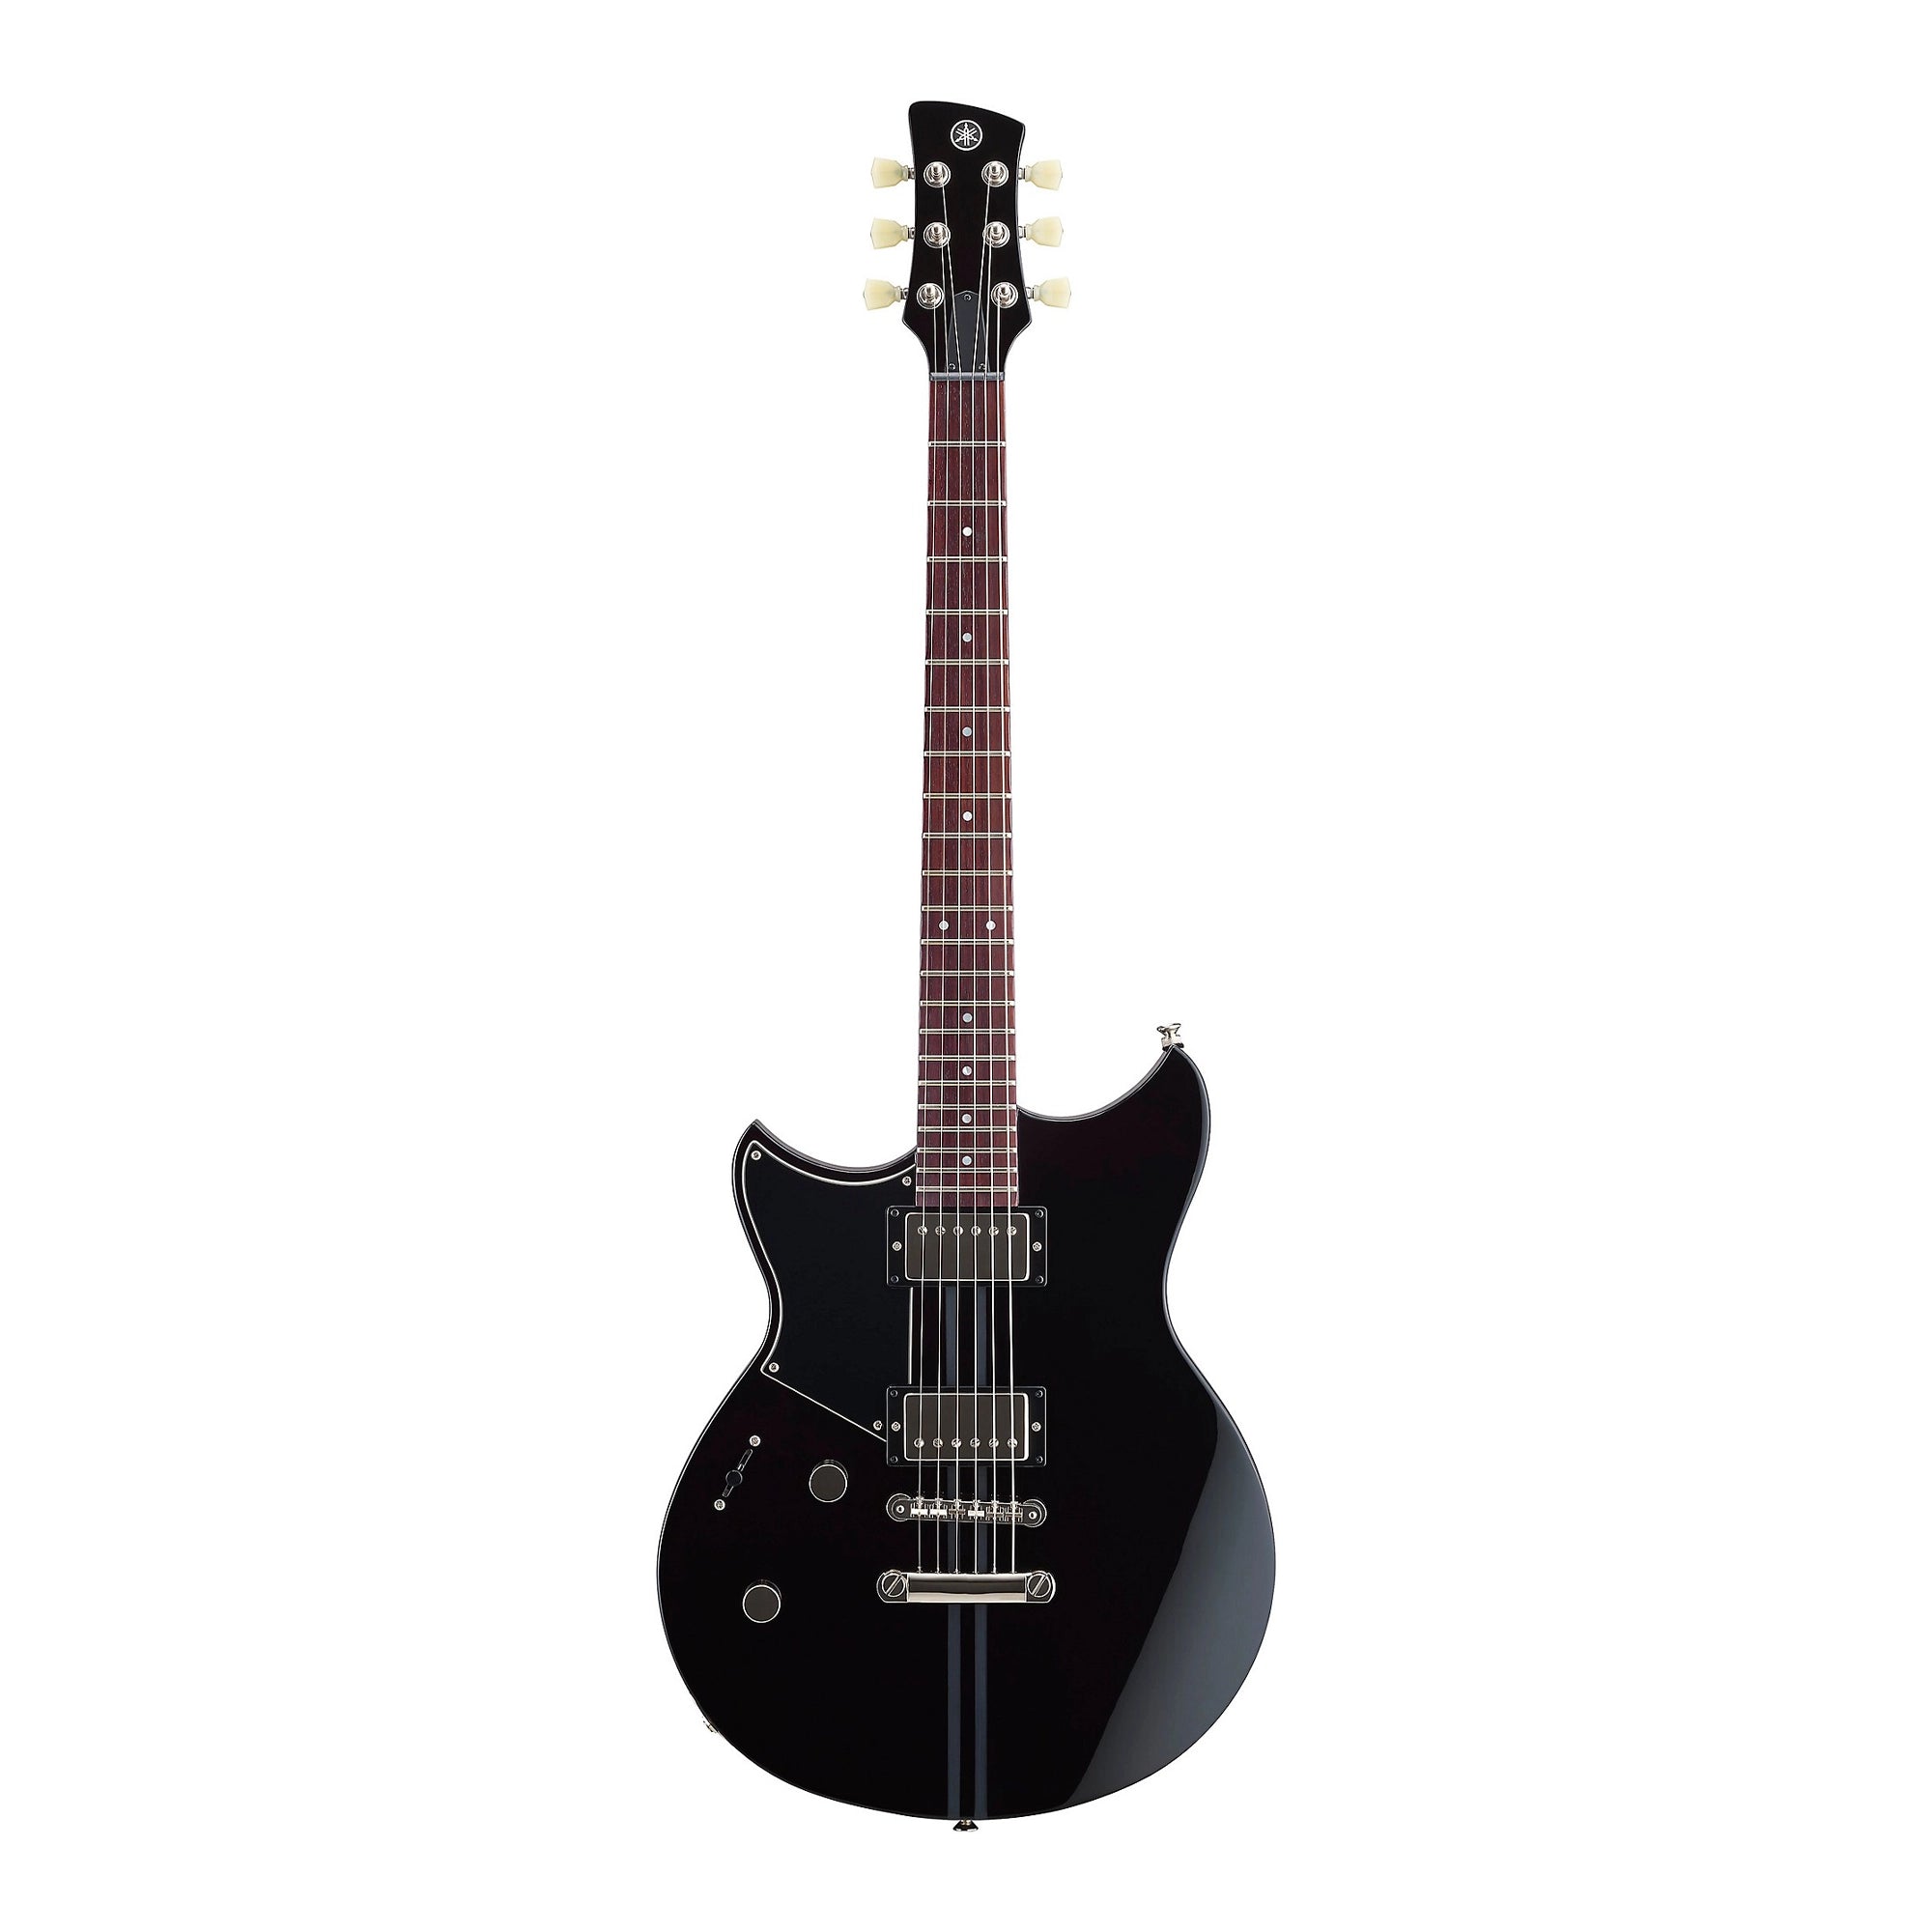 Yamaha Revstar Element RSE20L Left-Handed Electric Guitar Black